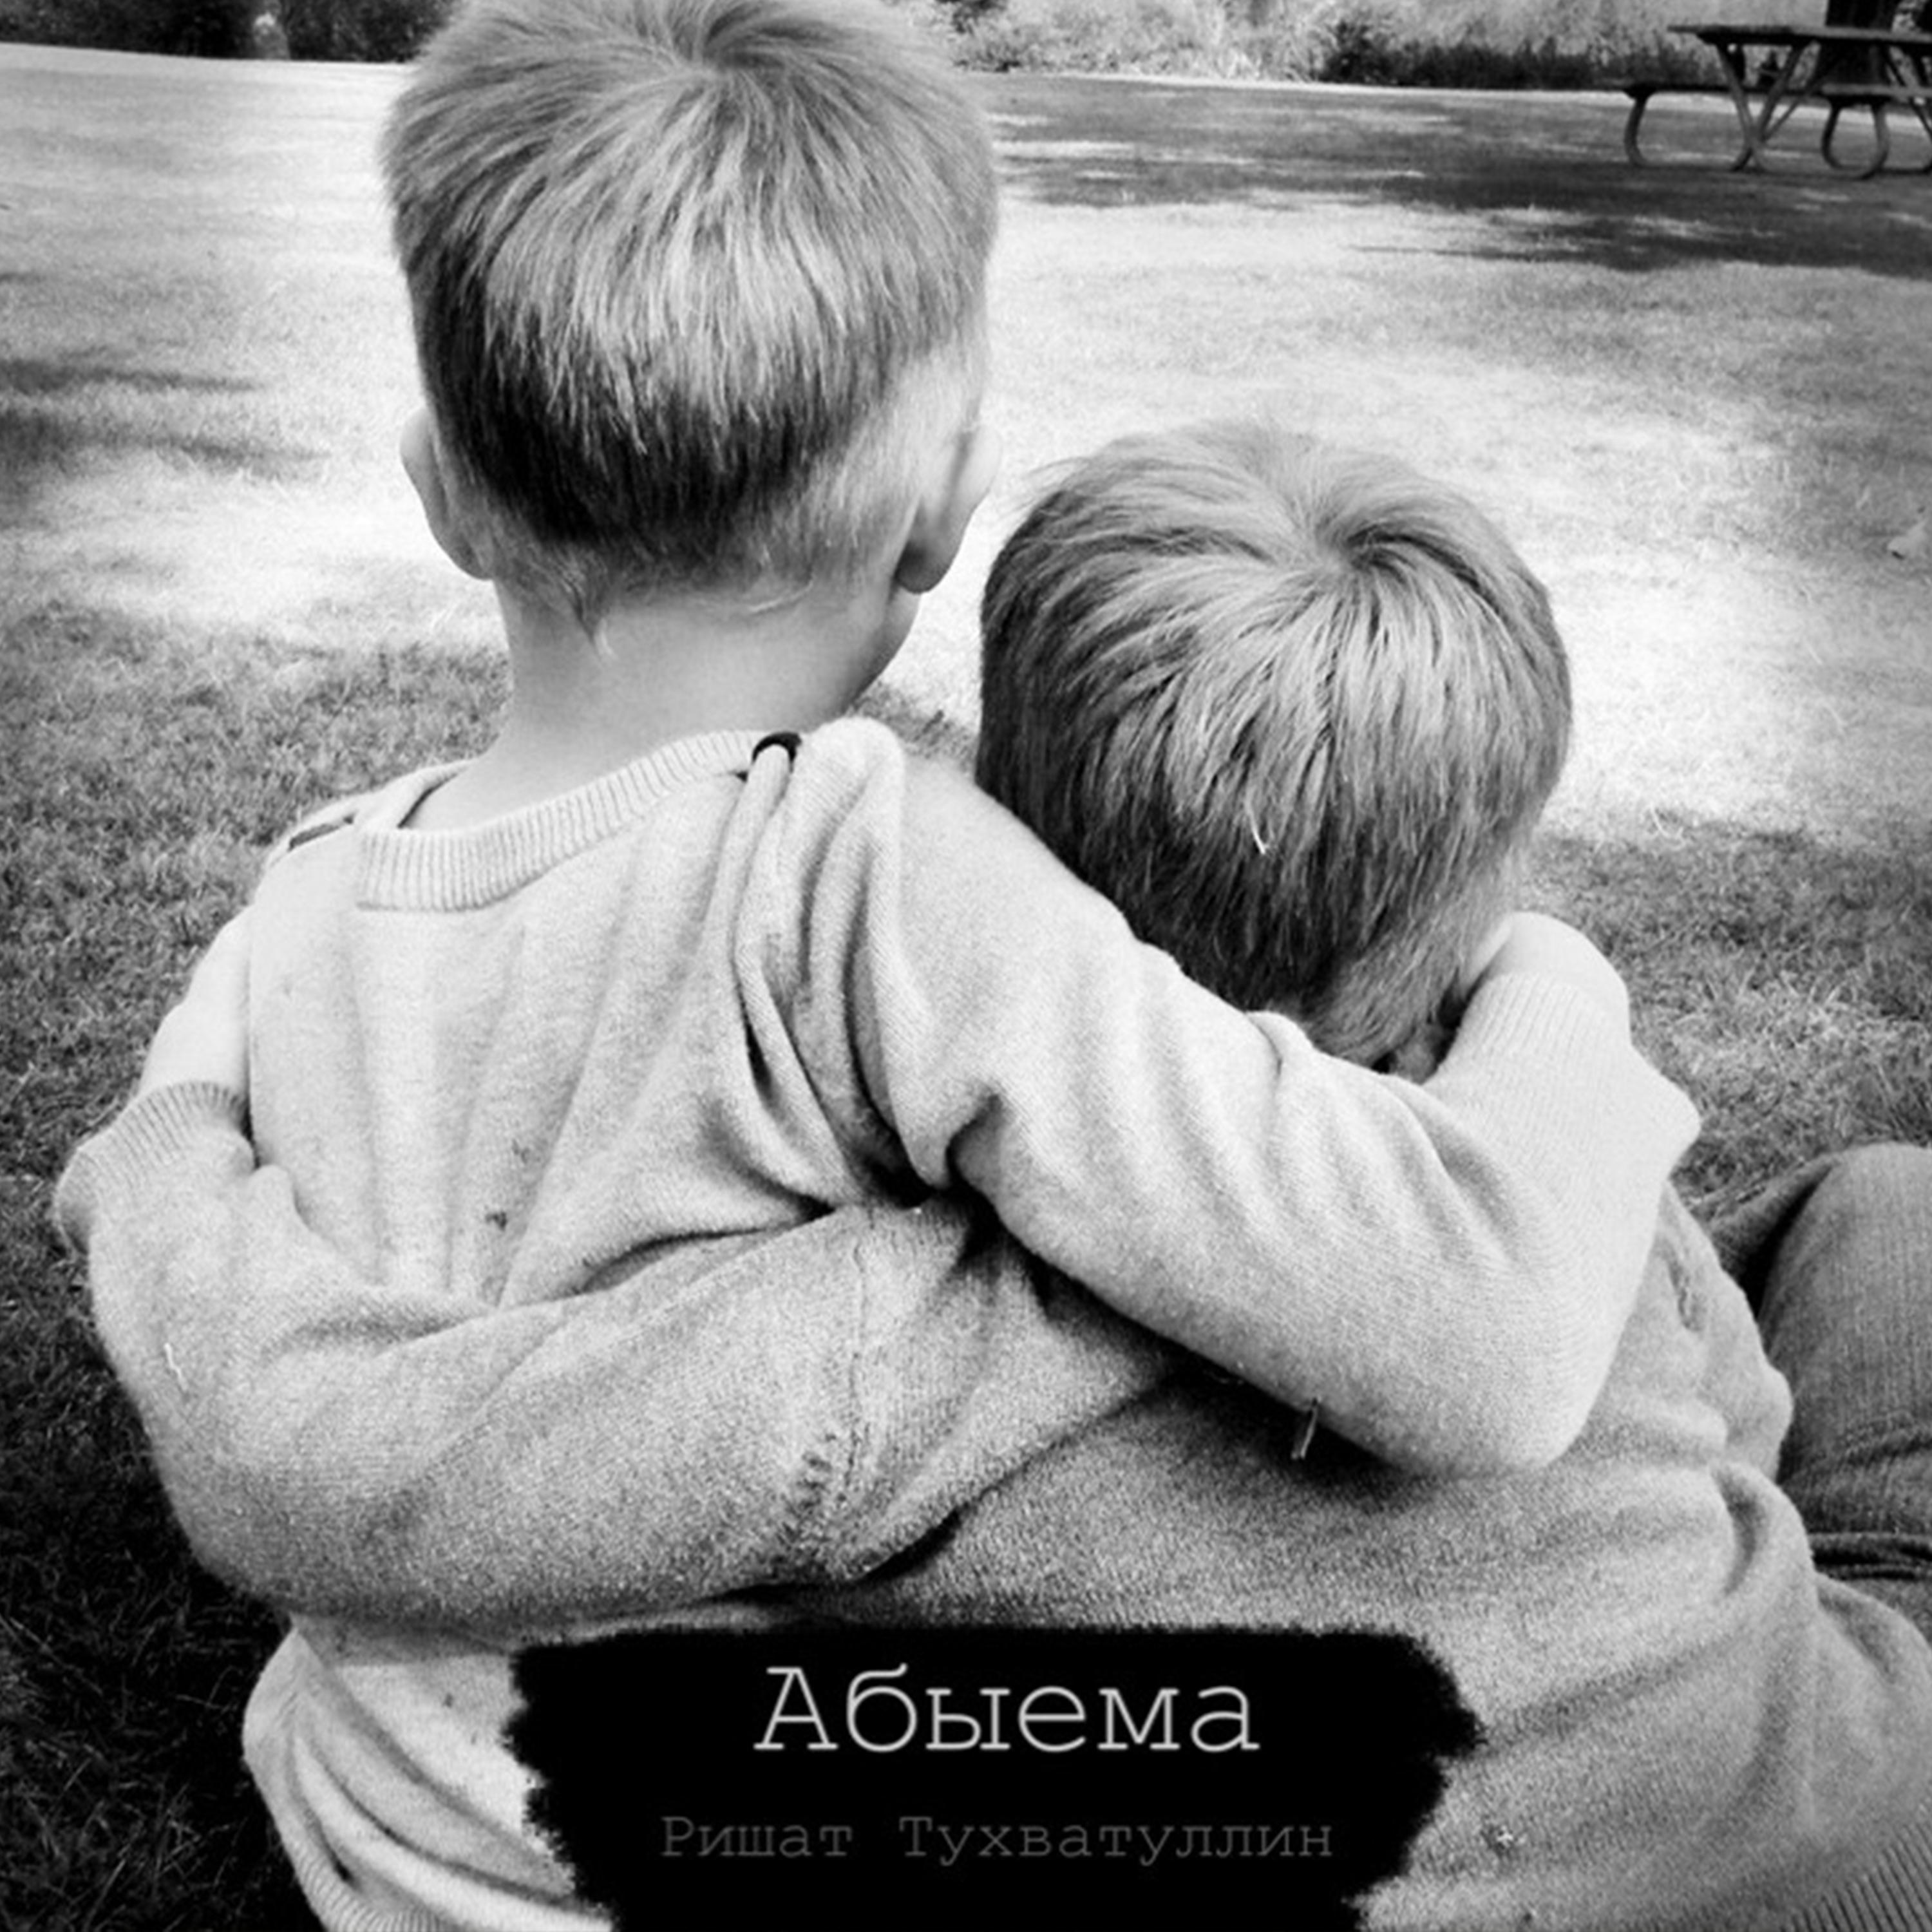 Со братцы. Объятия братьев. Два мальчика. Братья обнимаются. Мальчик обнимает мальчика.